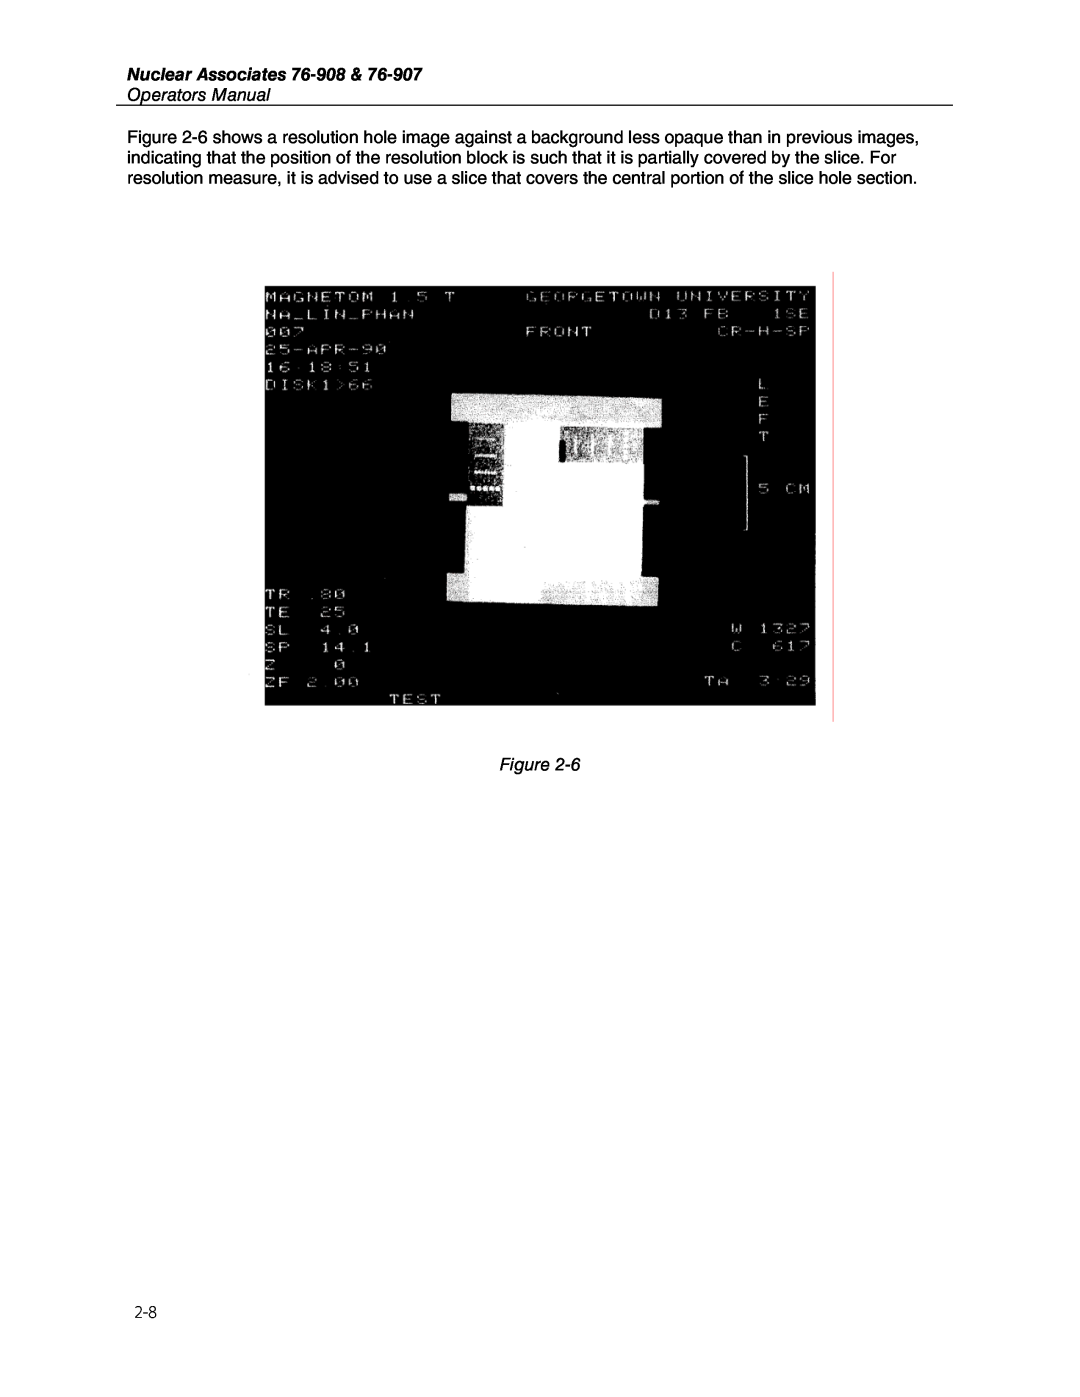 Fluke 76-908, 76-907 user manual Nuclear Associates, Operators Manual 